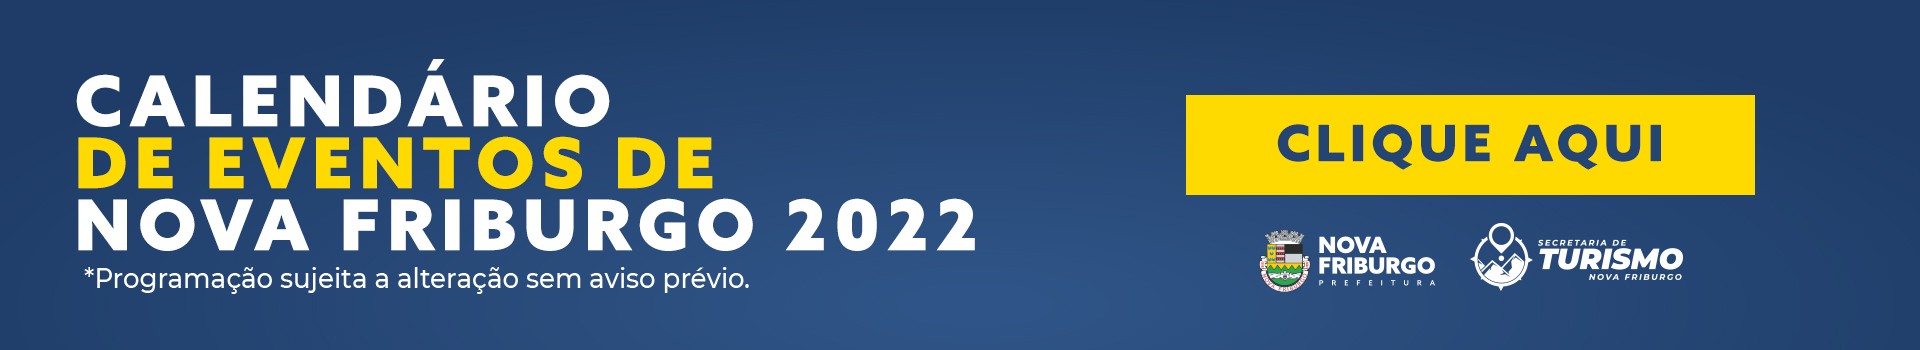 Calendário de Eventos Nova Friburgo 2022